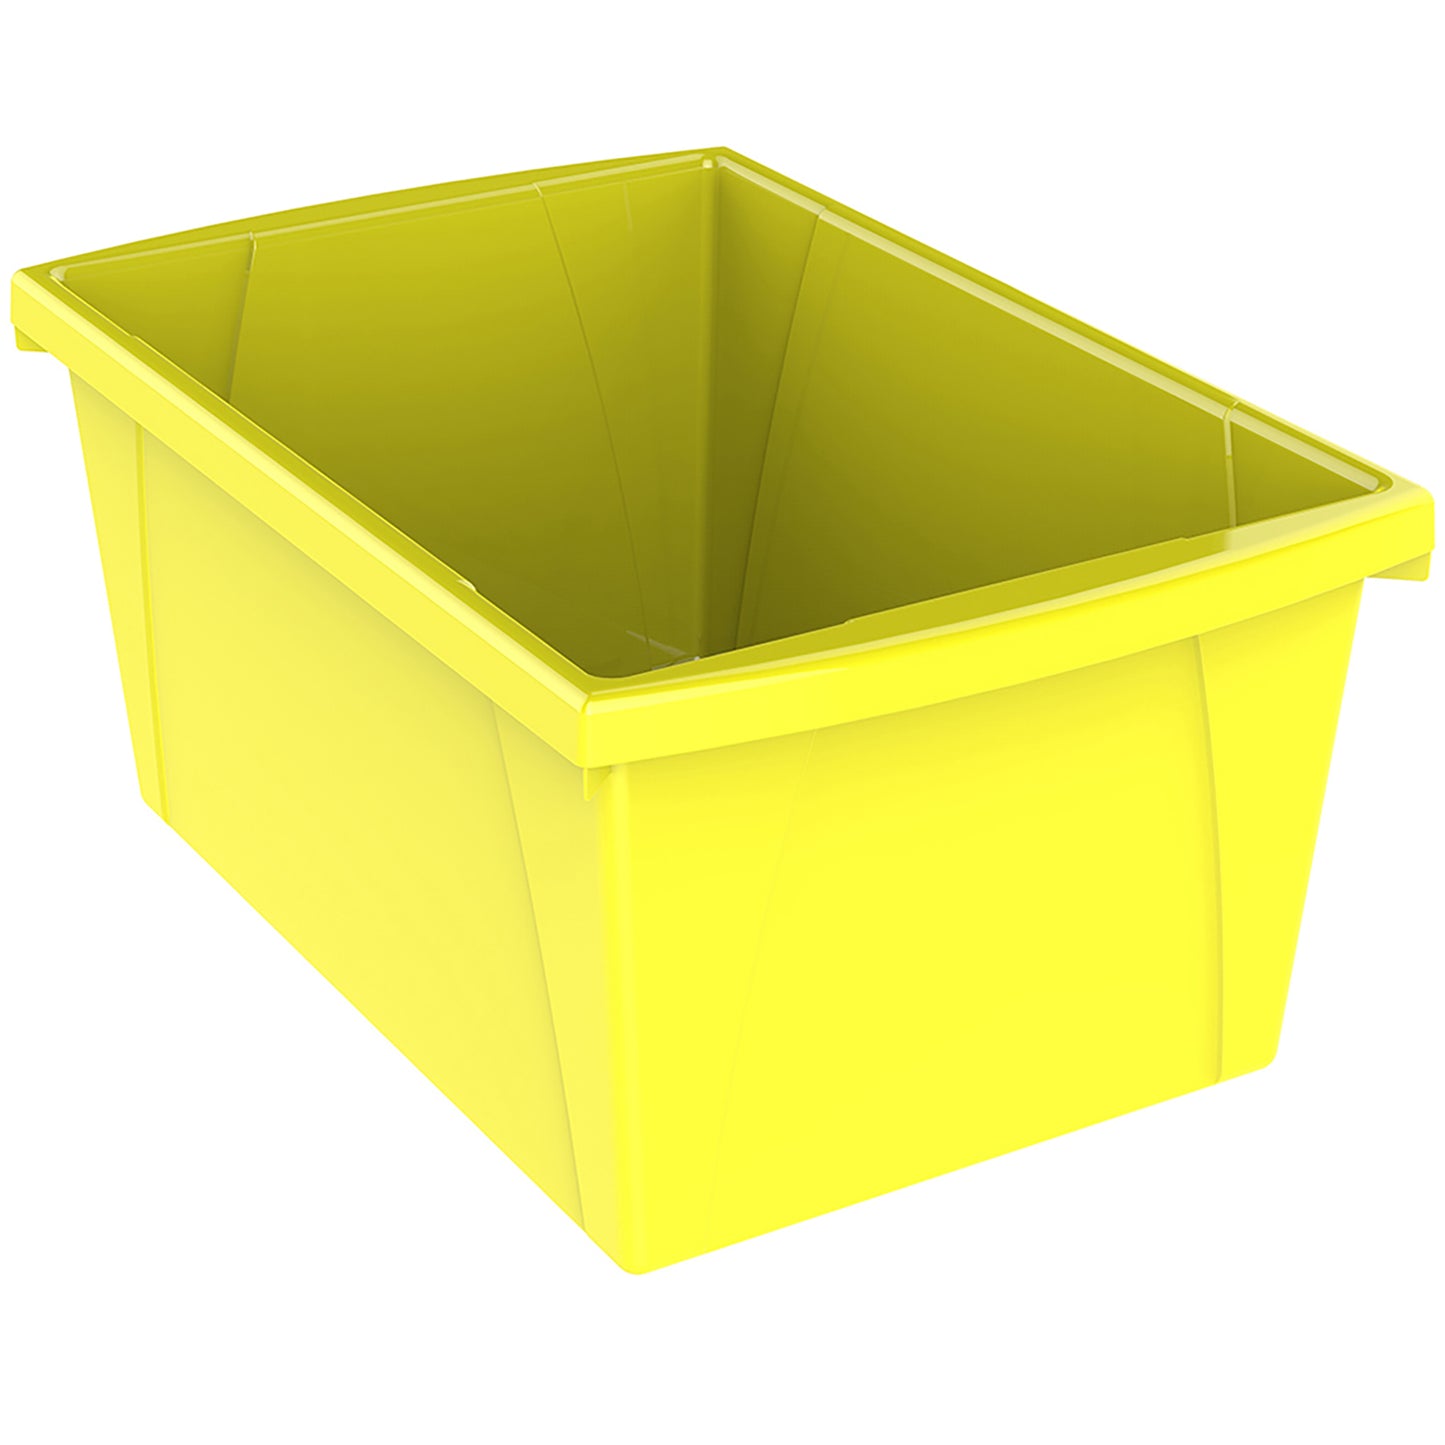 Medium Classroom Storage Bin, Yellow, Pack of 2